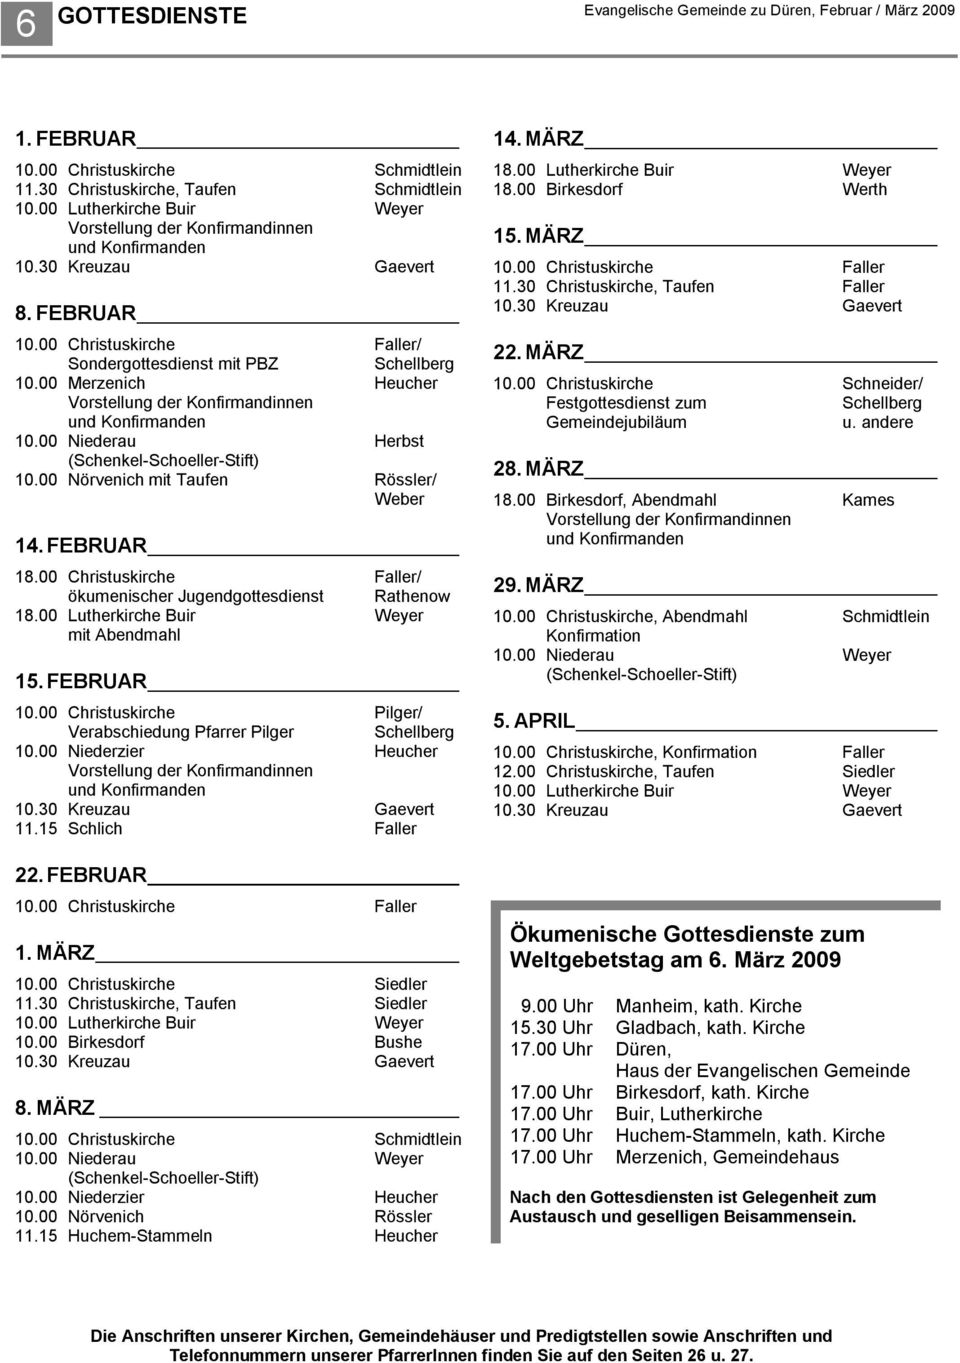 00 Merzenich Heucher Vorstellung der Konfirmandinnen und Konfirmanden 10.00 Niederau Herbst (Schenkel-Schoeller-Stift) 10.00 Nörvenich mit Taufen Rössler/ Weber 14. FEBRUAR 18.